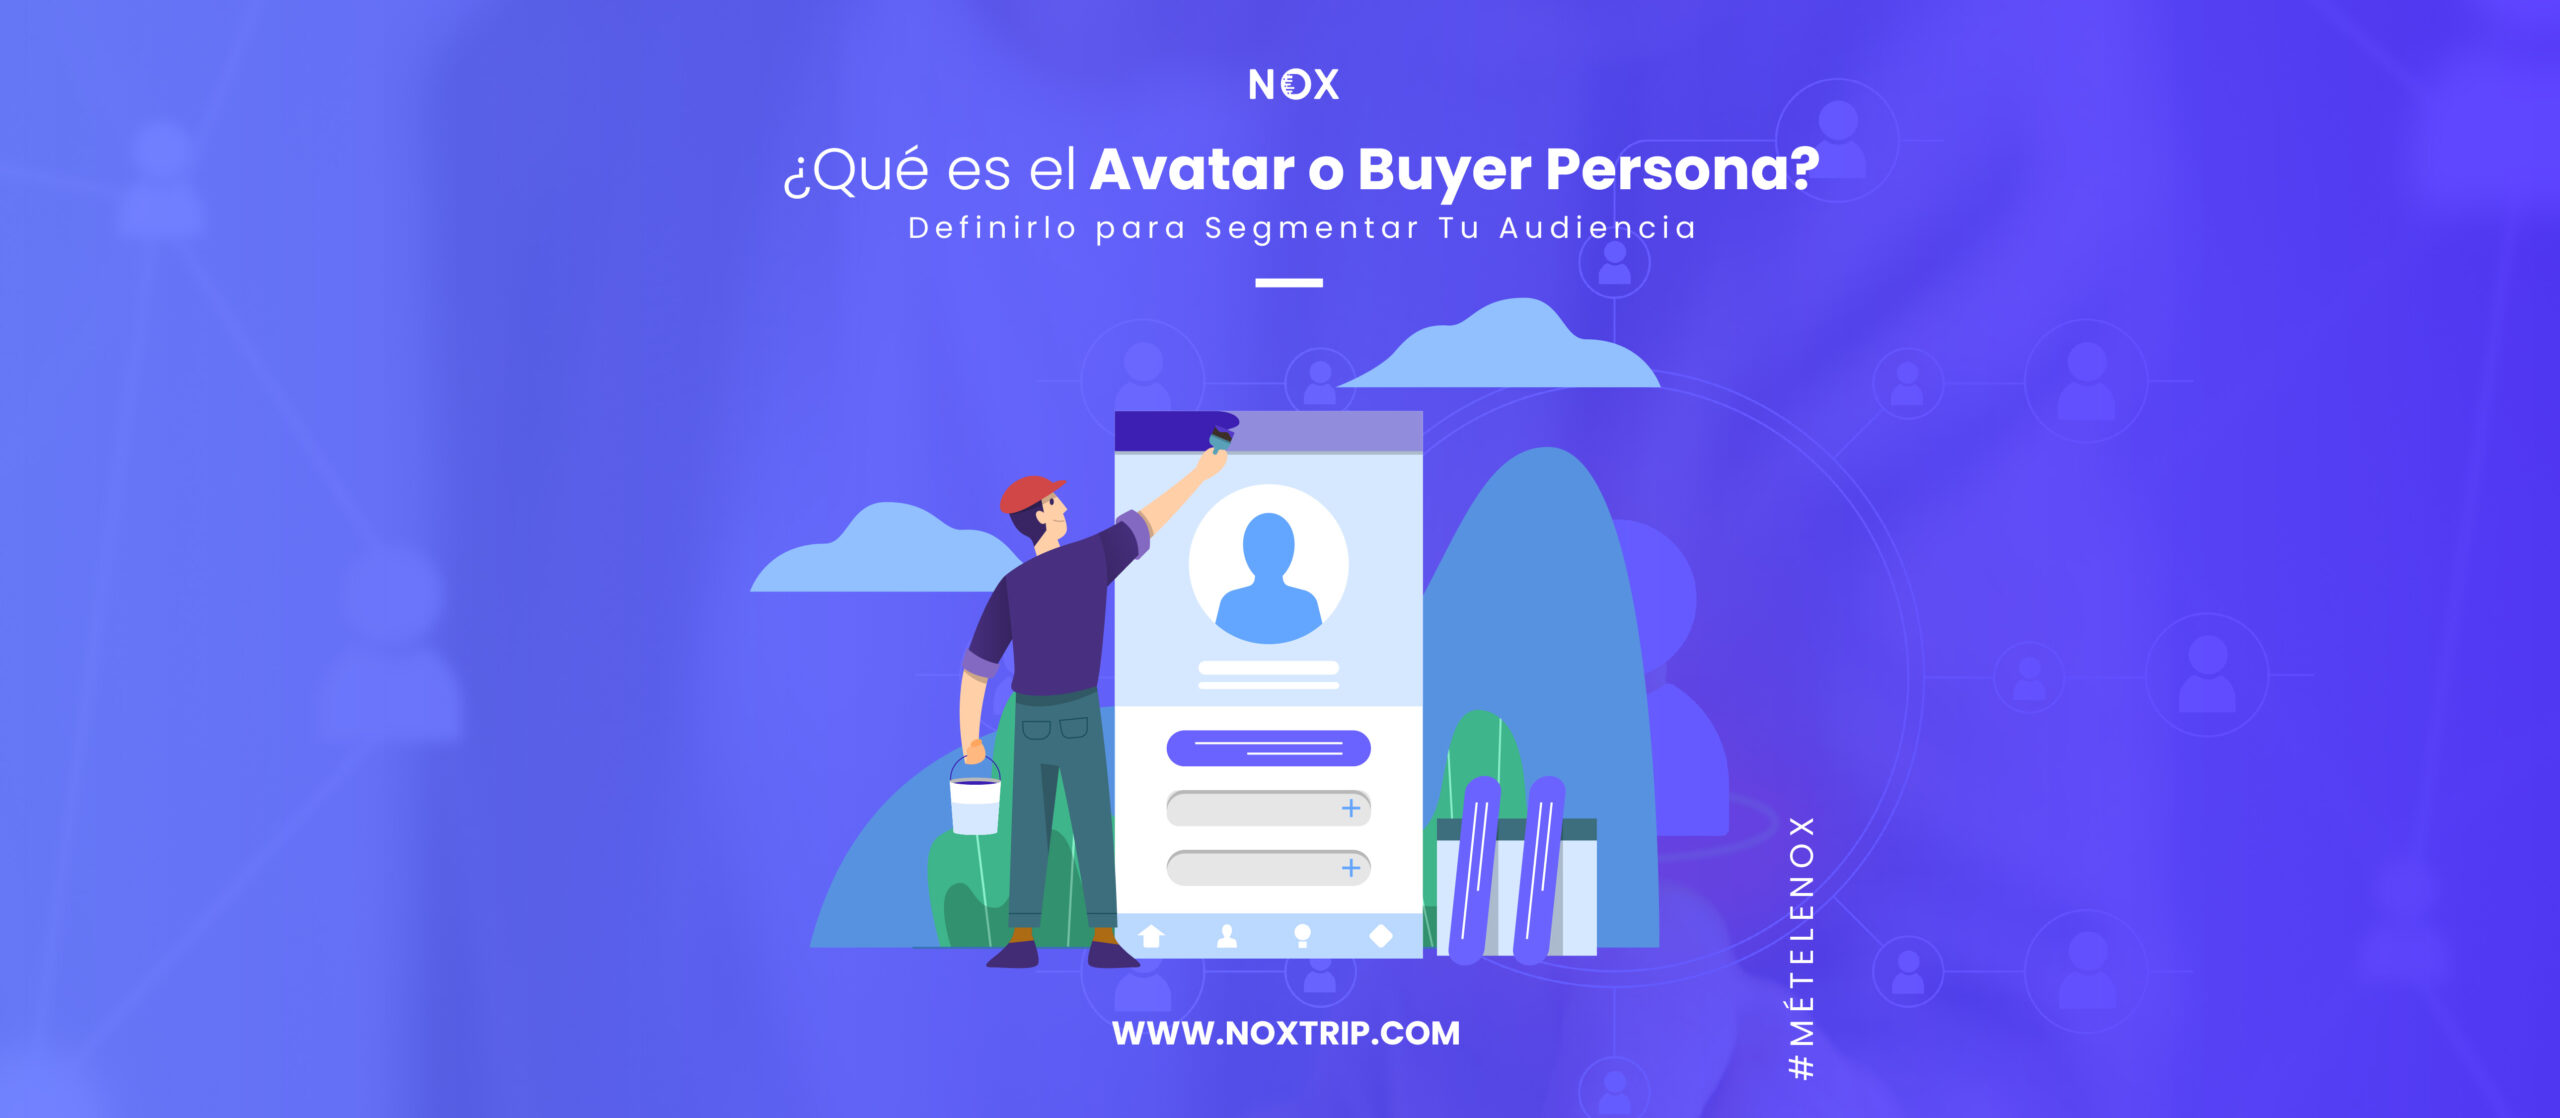 NOX Marketing Digital, Qué es el Avatar o Buyer Persona